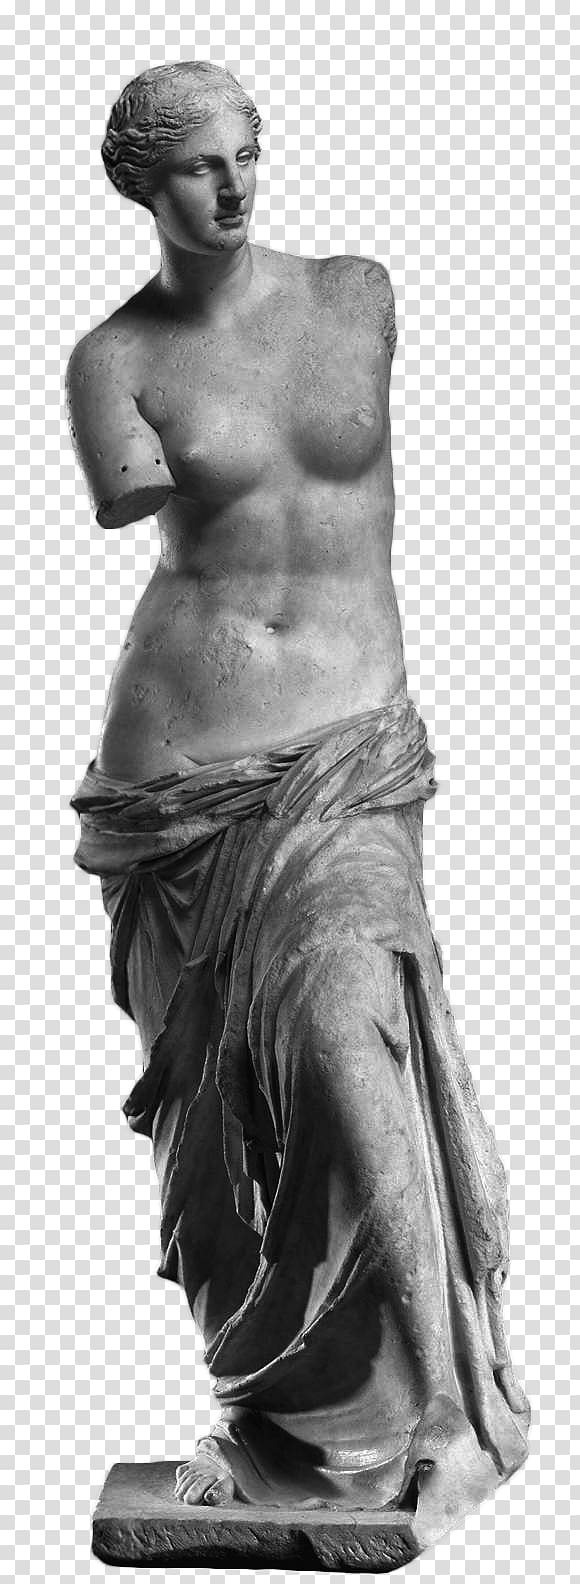 Venus de Milo statue art, Venus De Milo transparent background PNG clipart